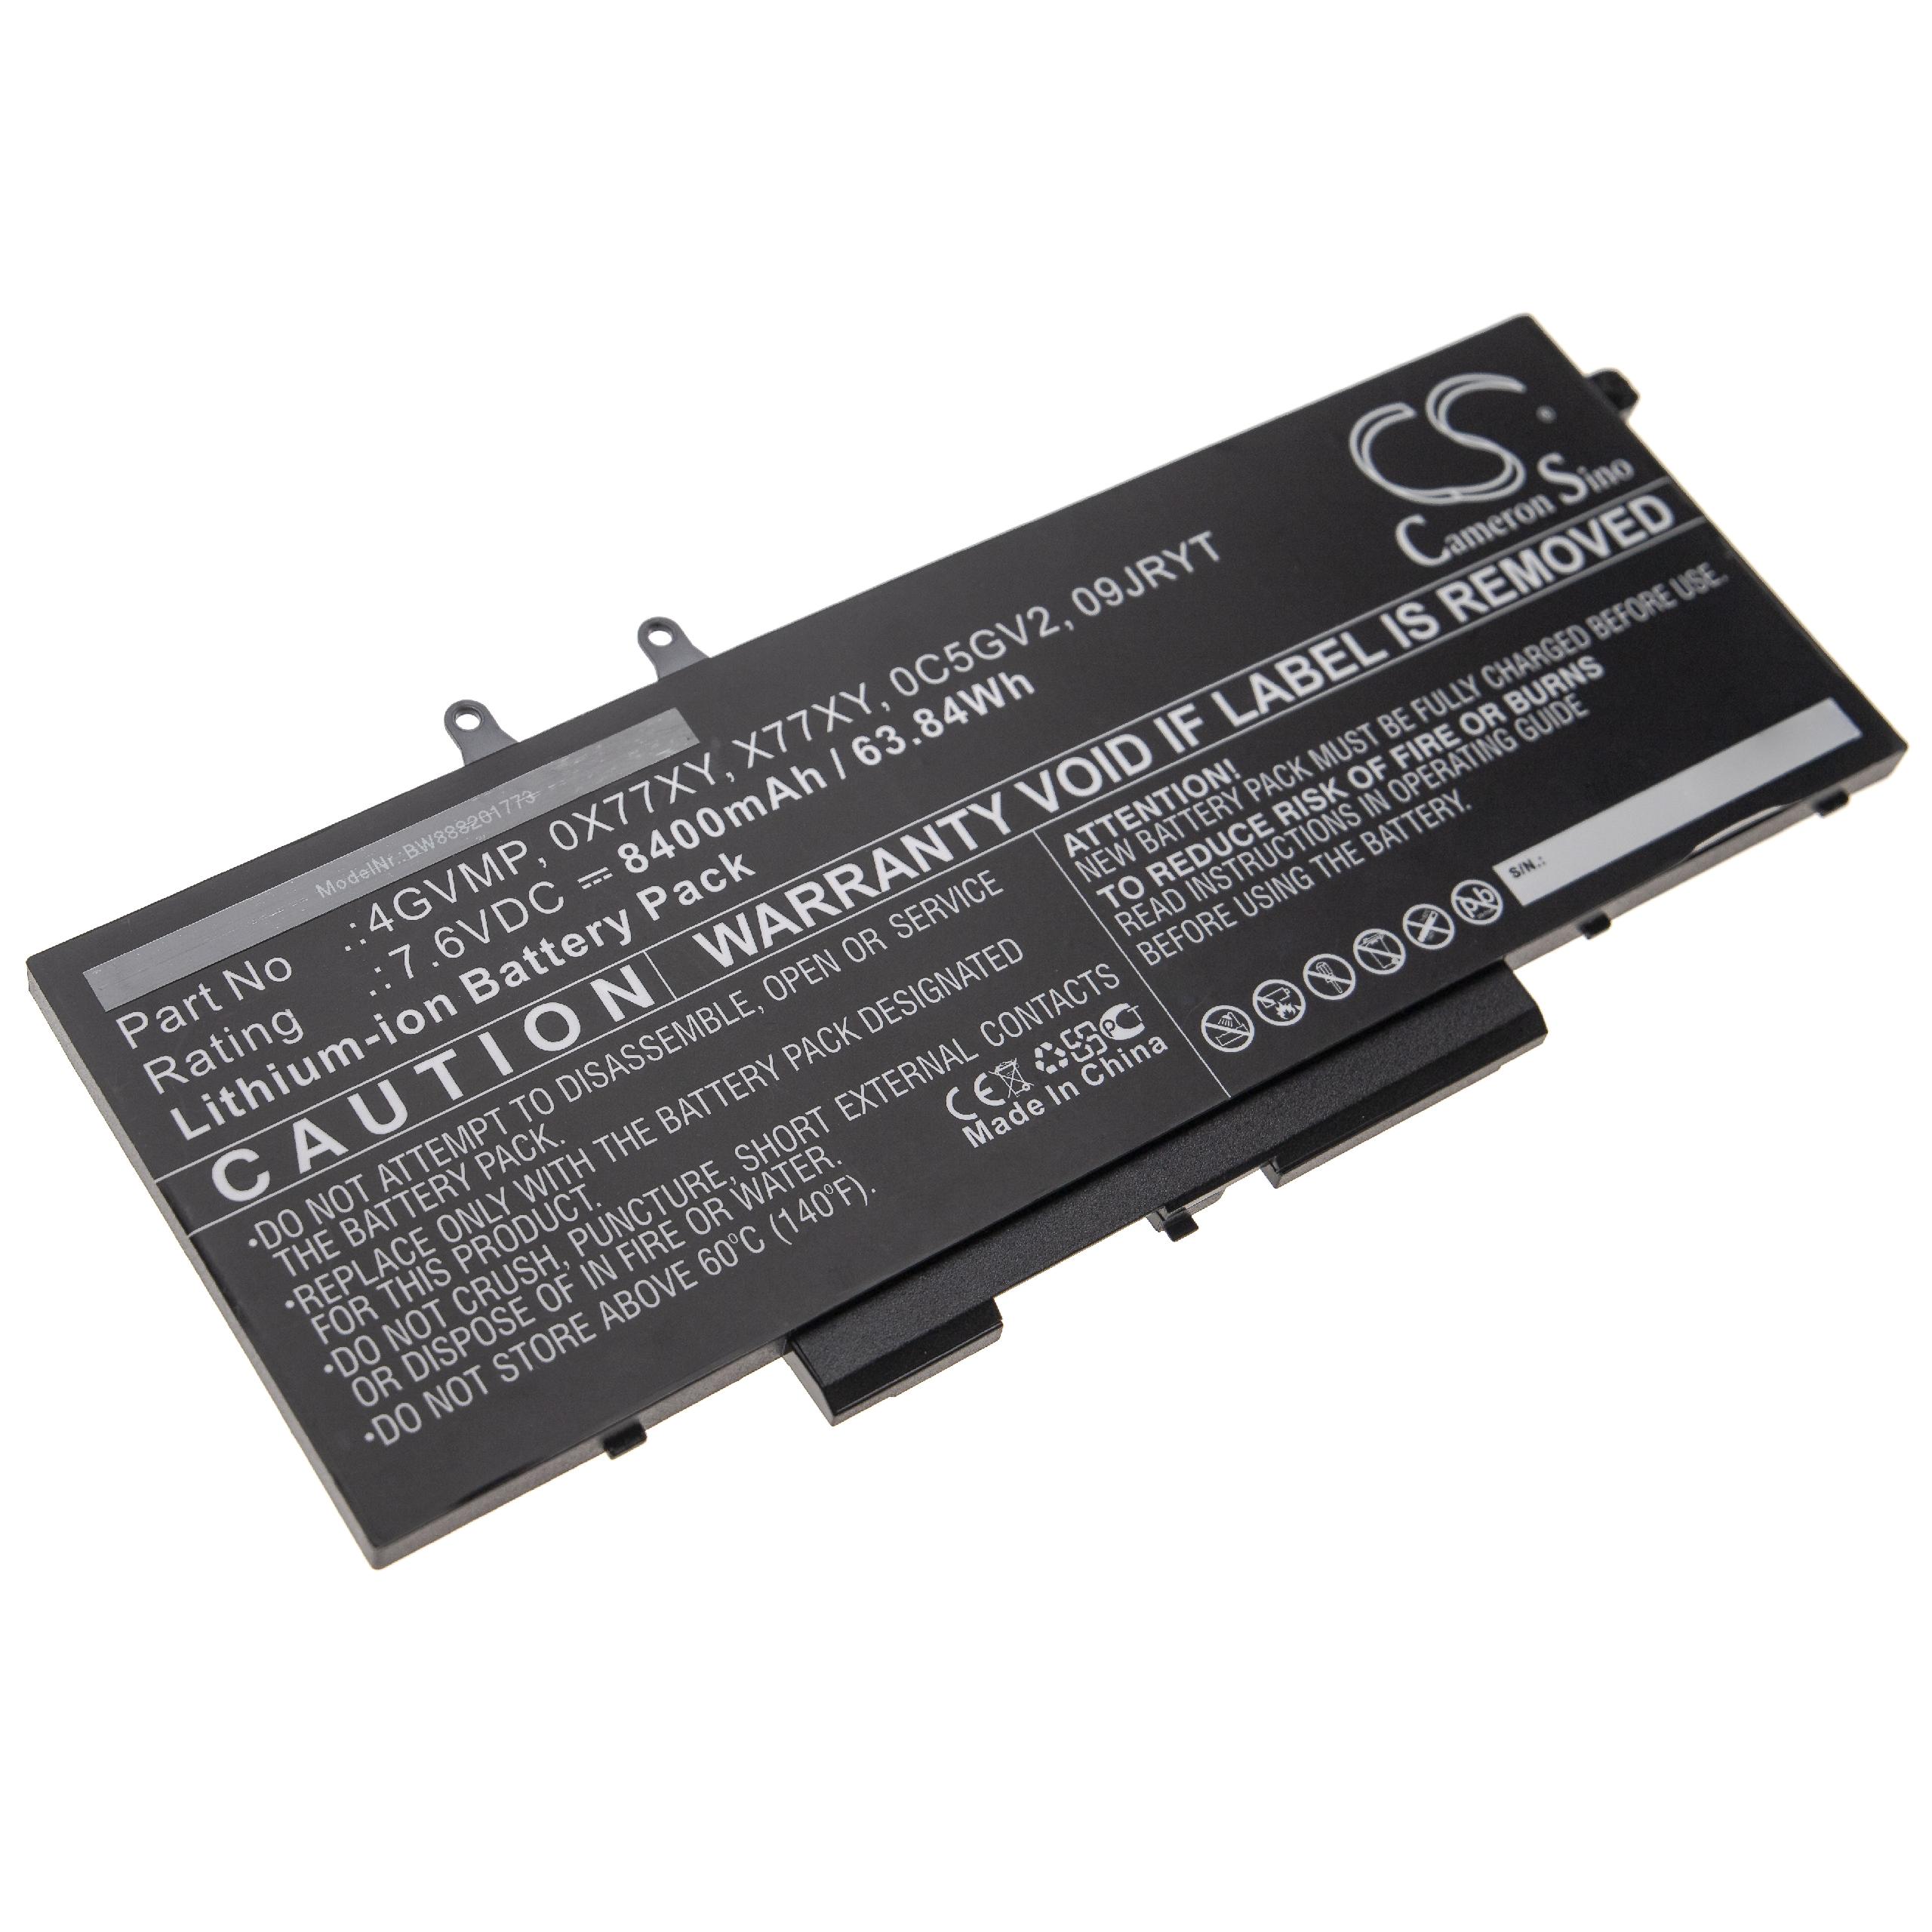 Batterie remplace Dell 09JRYT, 0C5GV2, 0X77XY, 4GVMP pour ordinateur portable - 8400mAh 7,6V Li-ion, noir